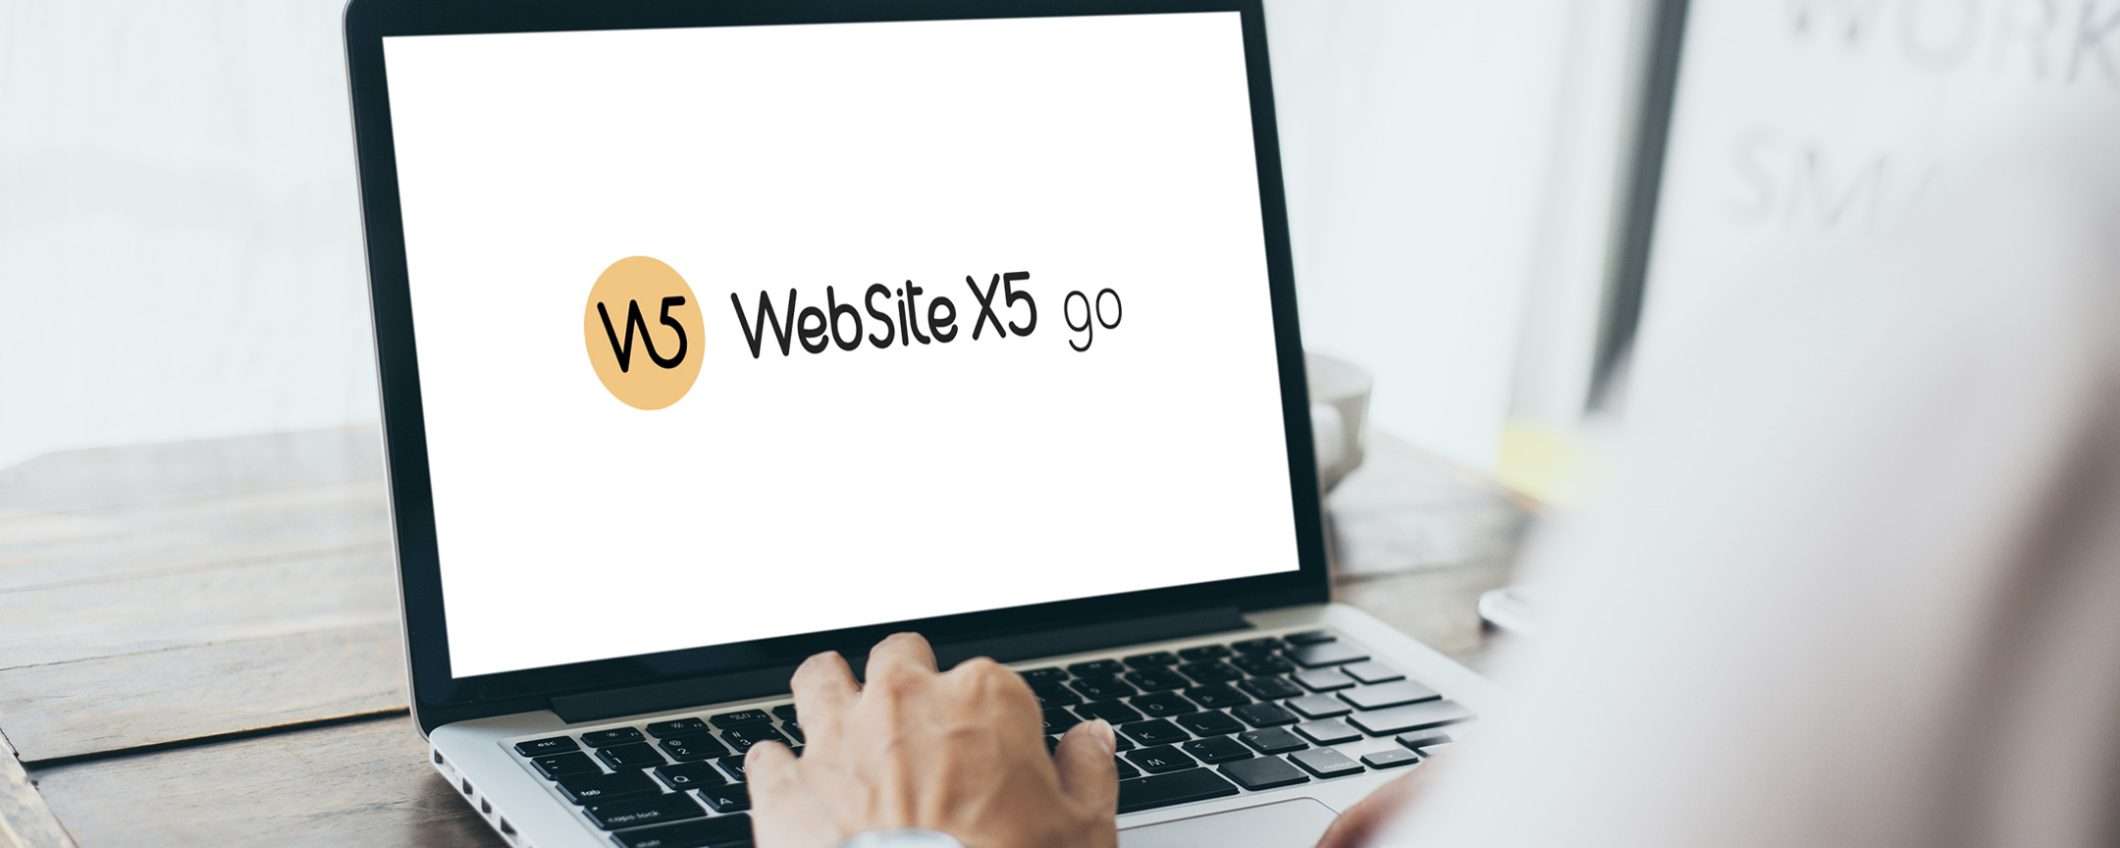 WebSite X5 Evo di Incomedia: la piattaforma ideale per creare il tuo sito web